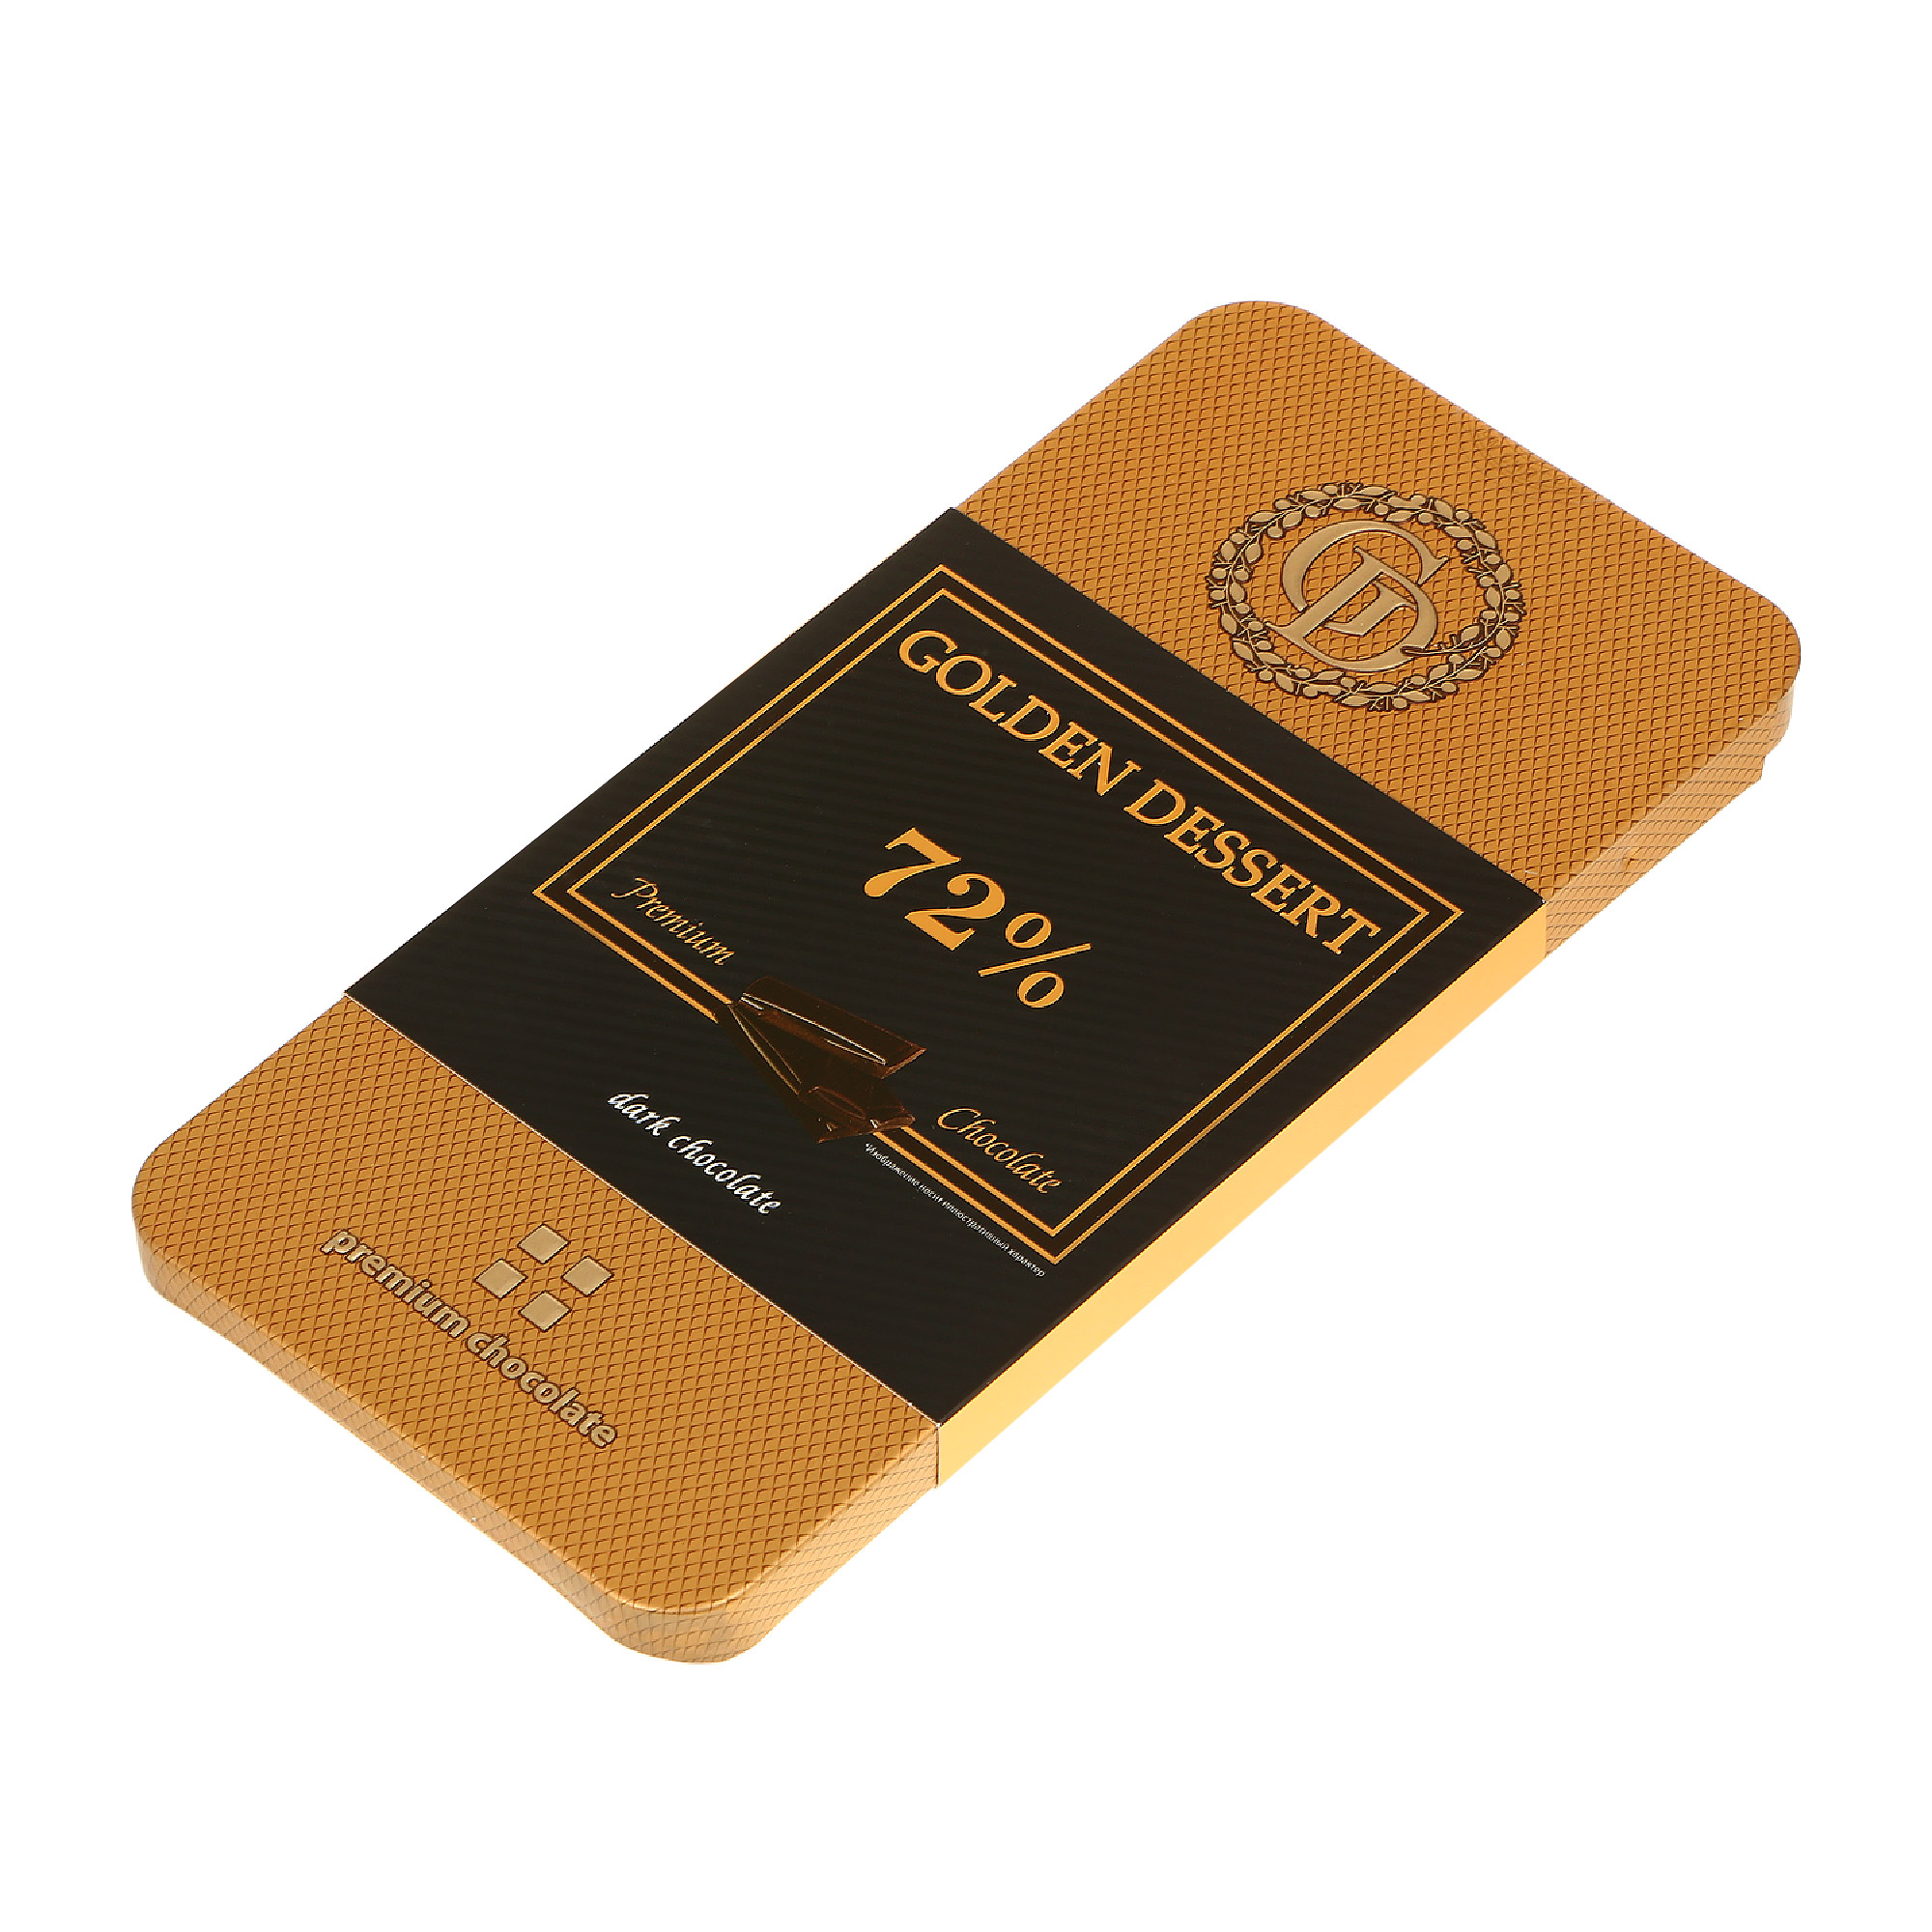 Шоколад горький GOLDEN DESSERT 72% 100 г шоколад rioba горький 72% какао 100 гр